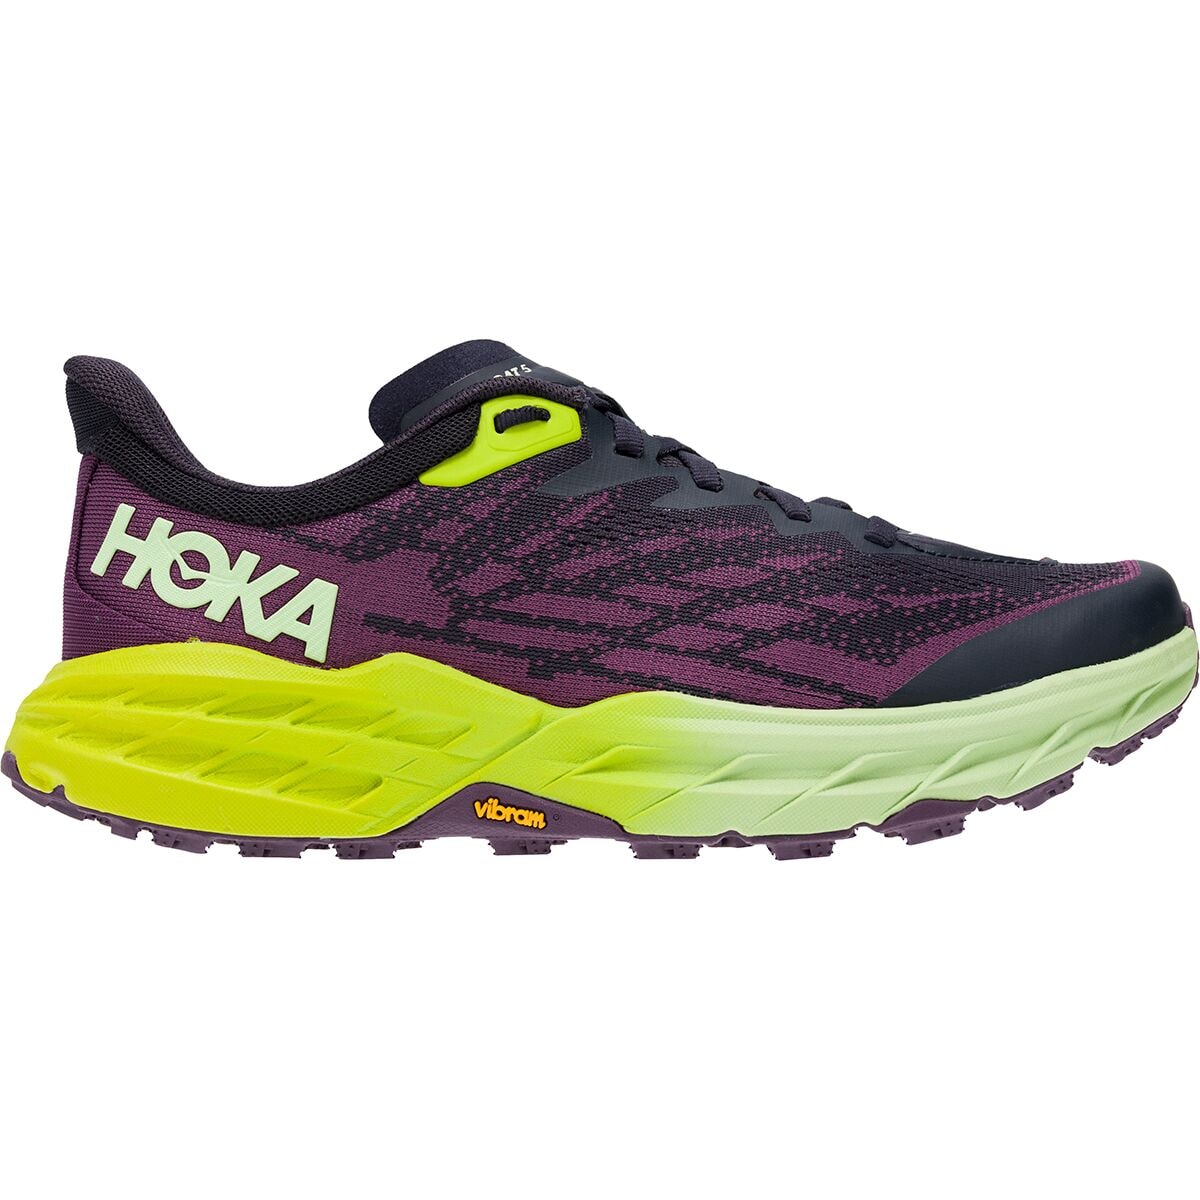 HOKA ONE ONE Speedgoat 5 Trail Running Shoe - Women's